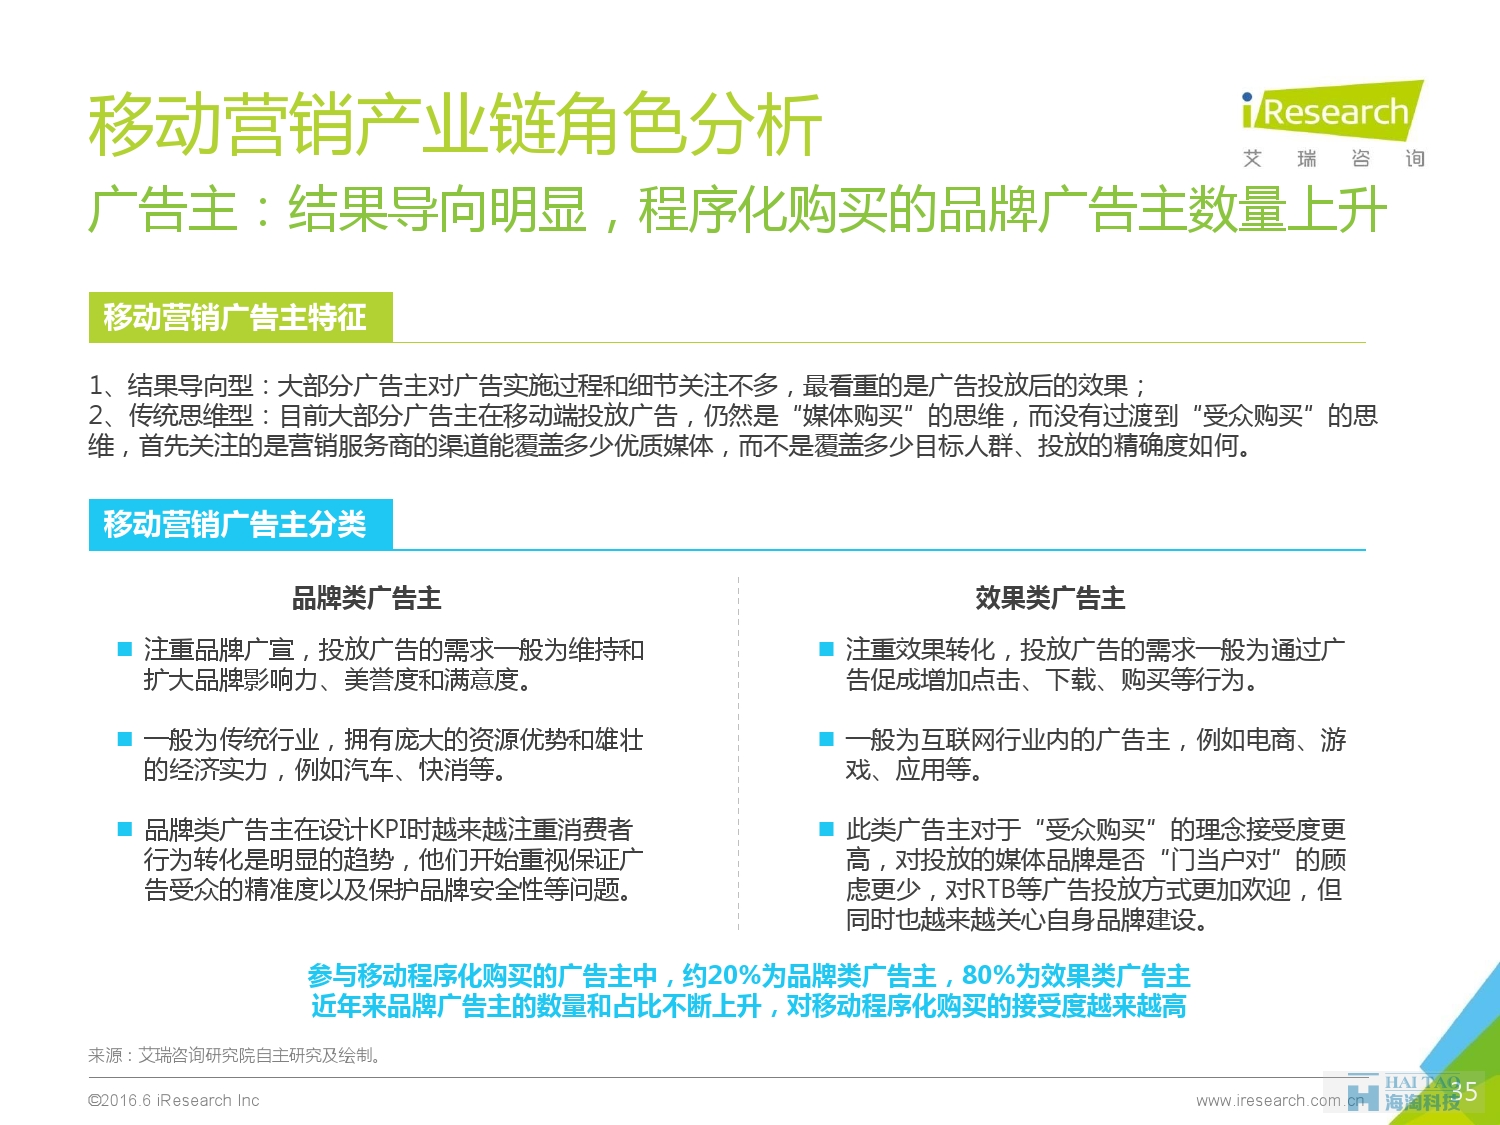 2016年中国移动营销行业研究报告——程序化时代篇_000035